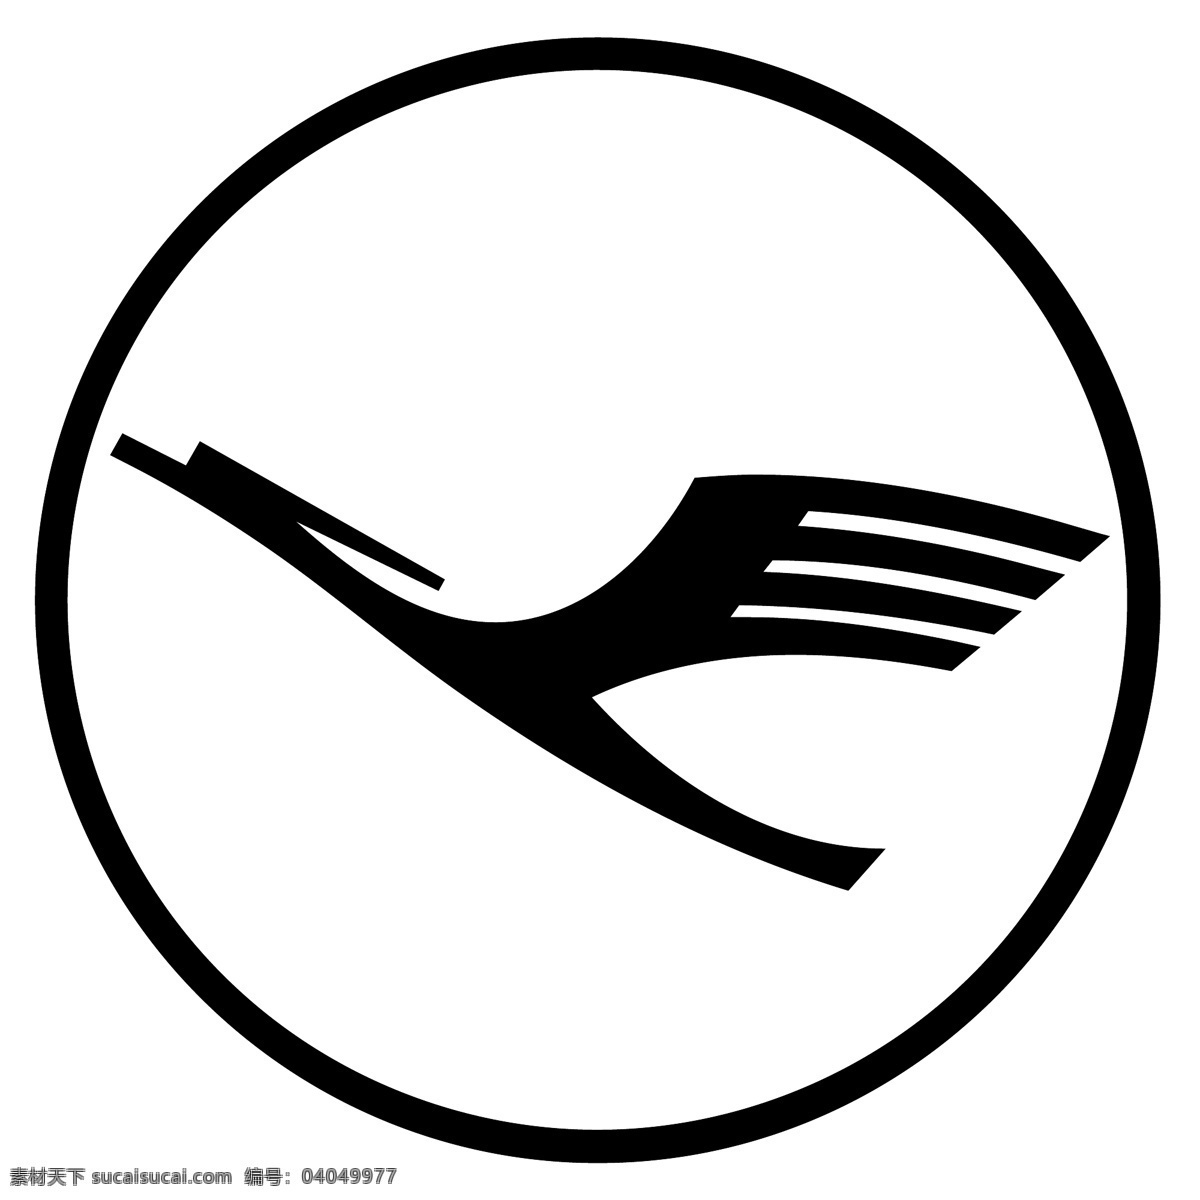 德国汉莎航空公司 标识 公司 免费 品牌 品牌标识 商标 矢量标志下载 免费矢量标识 矢量 psd源文件 logo设计